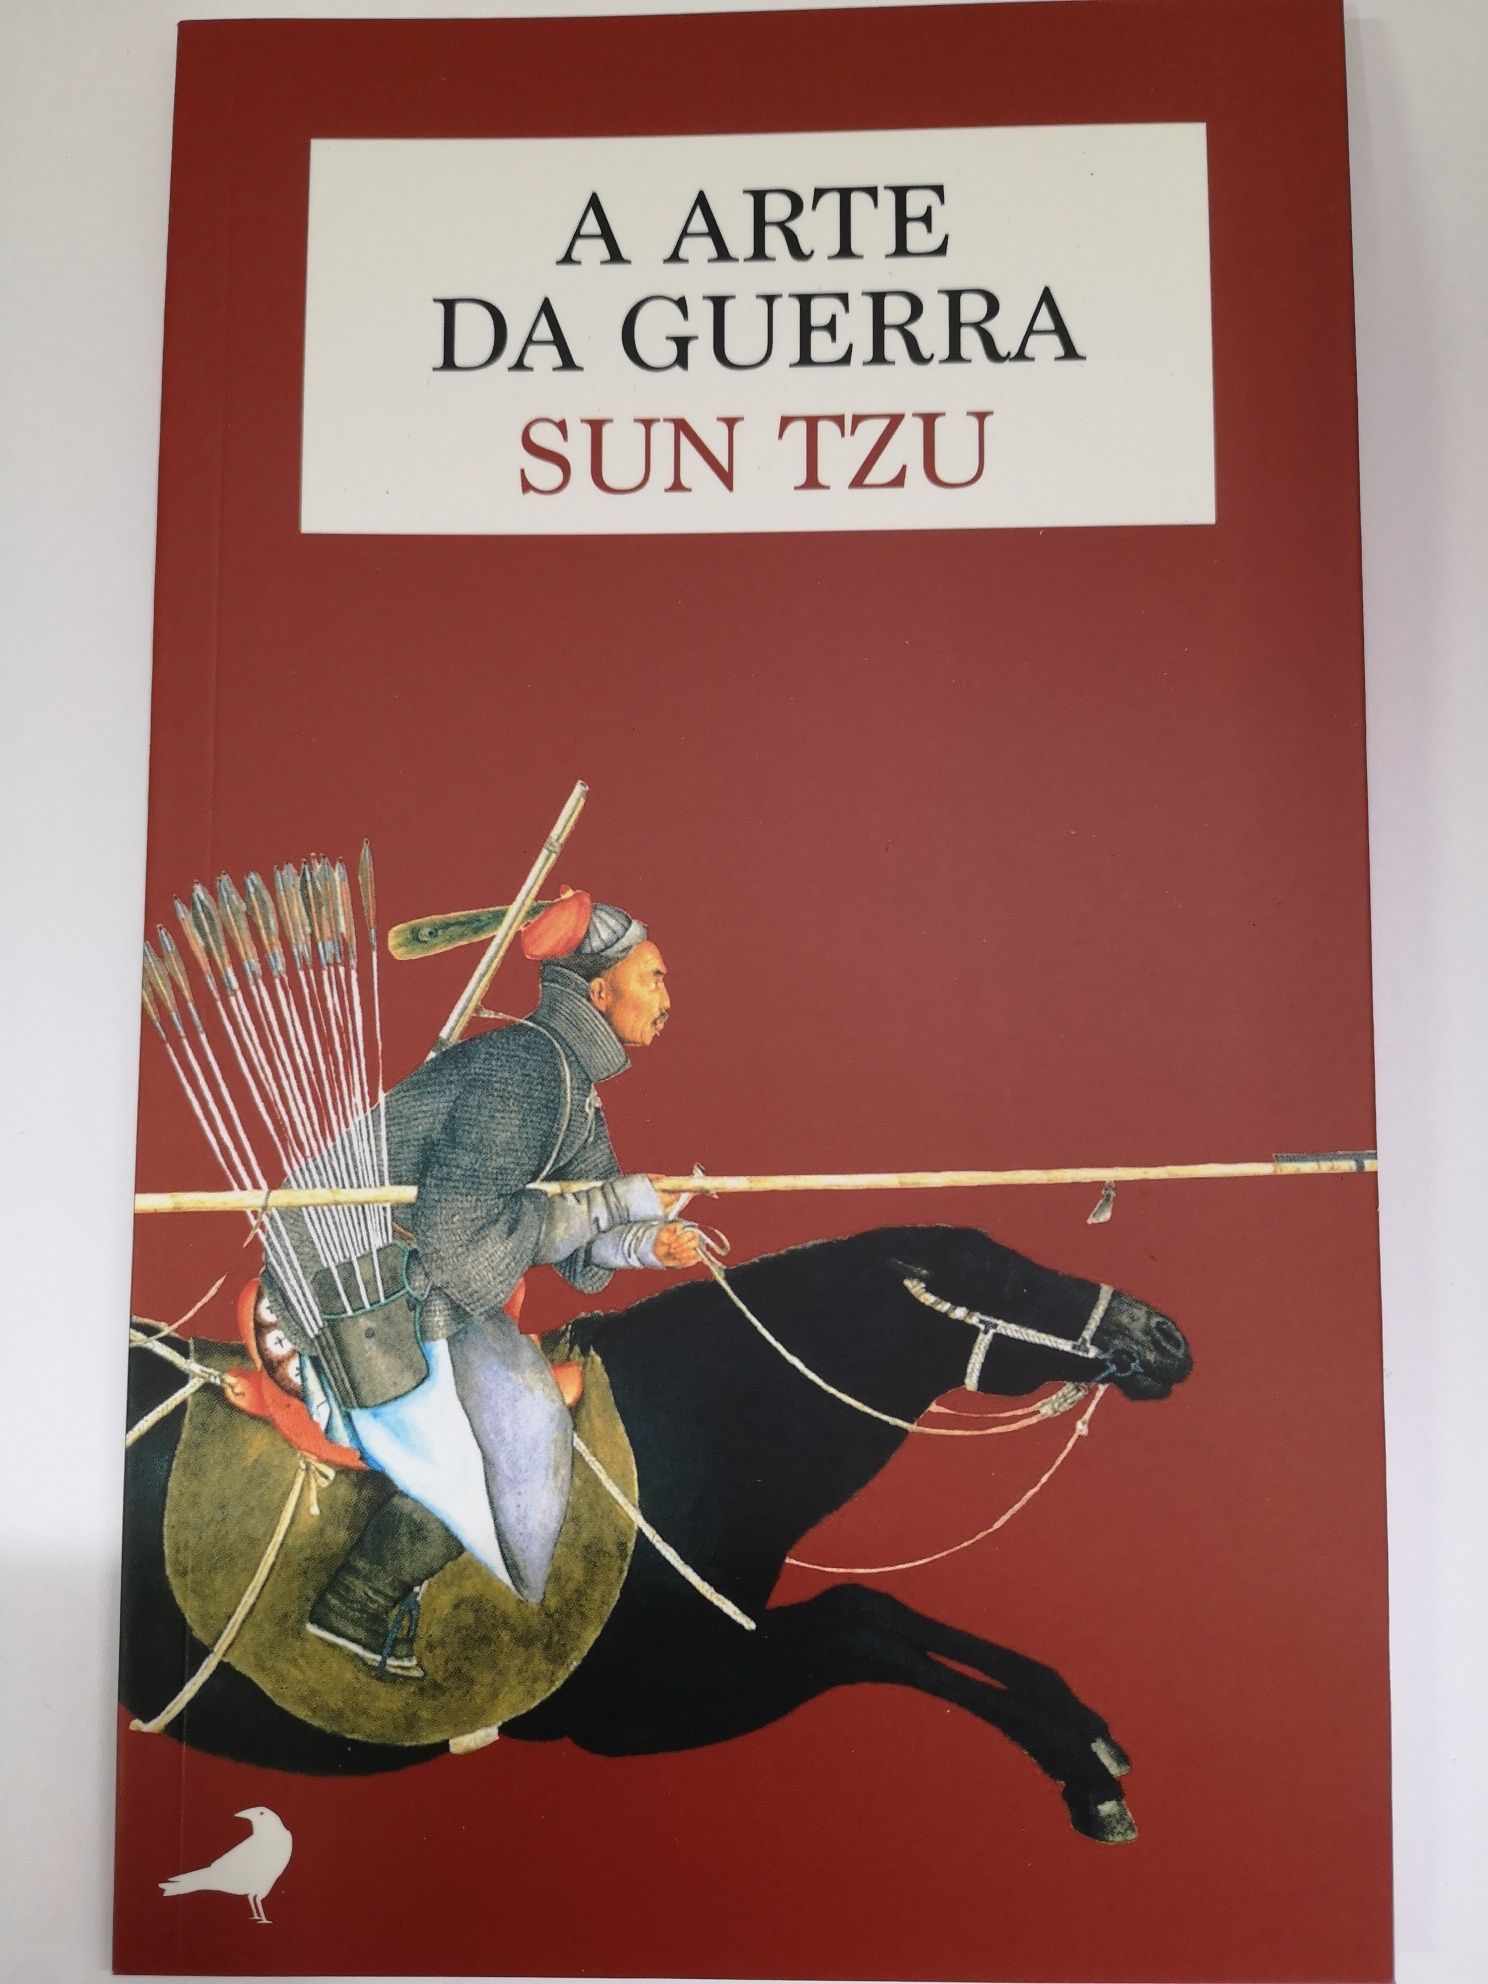 A Arte da Guerra -LIVRO de Sun Tzu Artigo novo nao manuseado Costa Da  Caparica • OLX Portugal